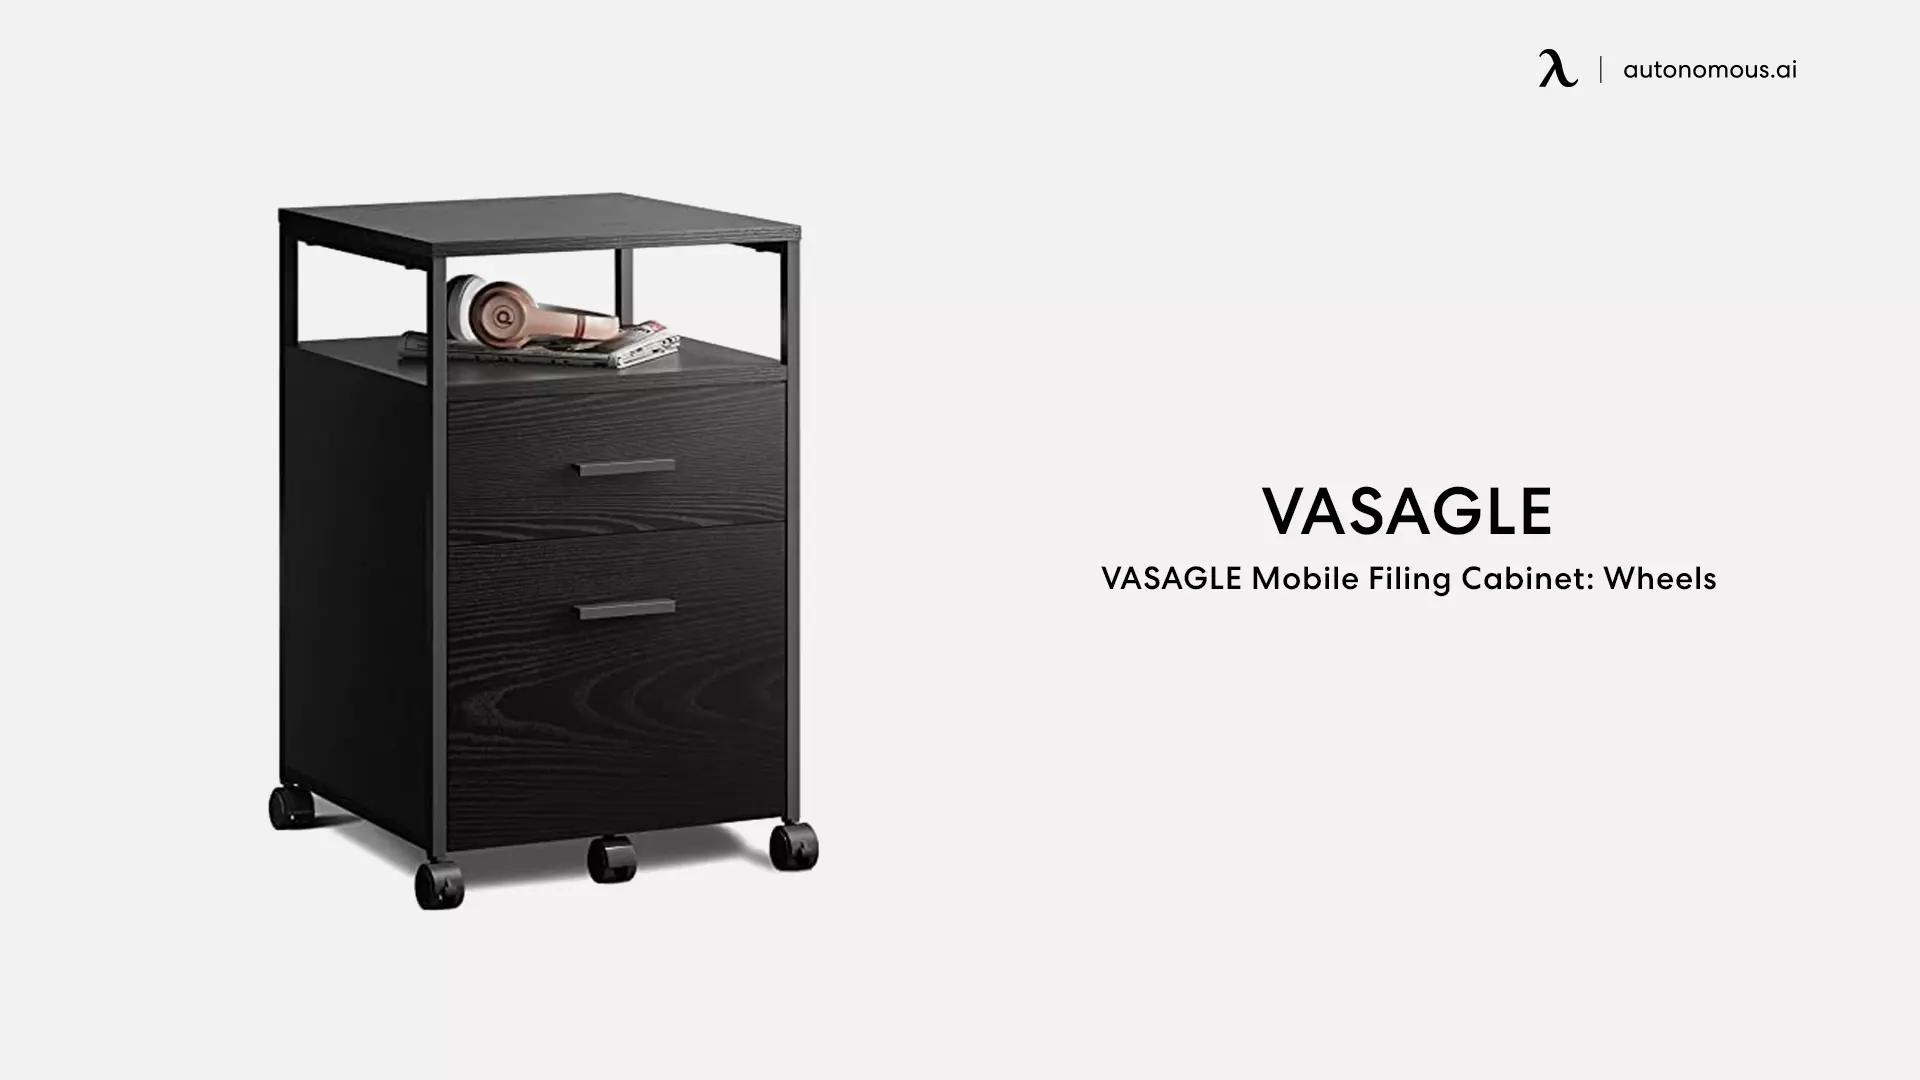 VASAGLE Mobile Filing Cabinet: Wheels